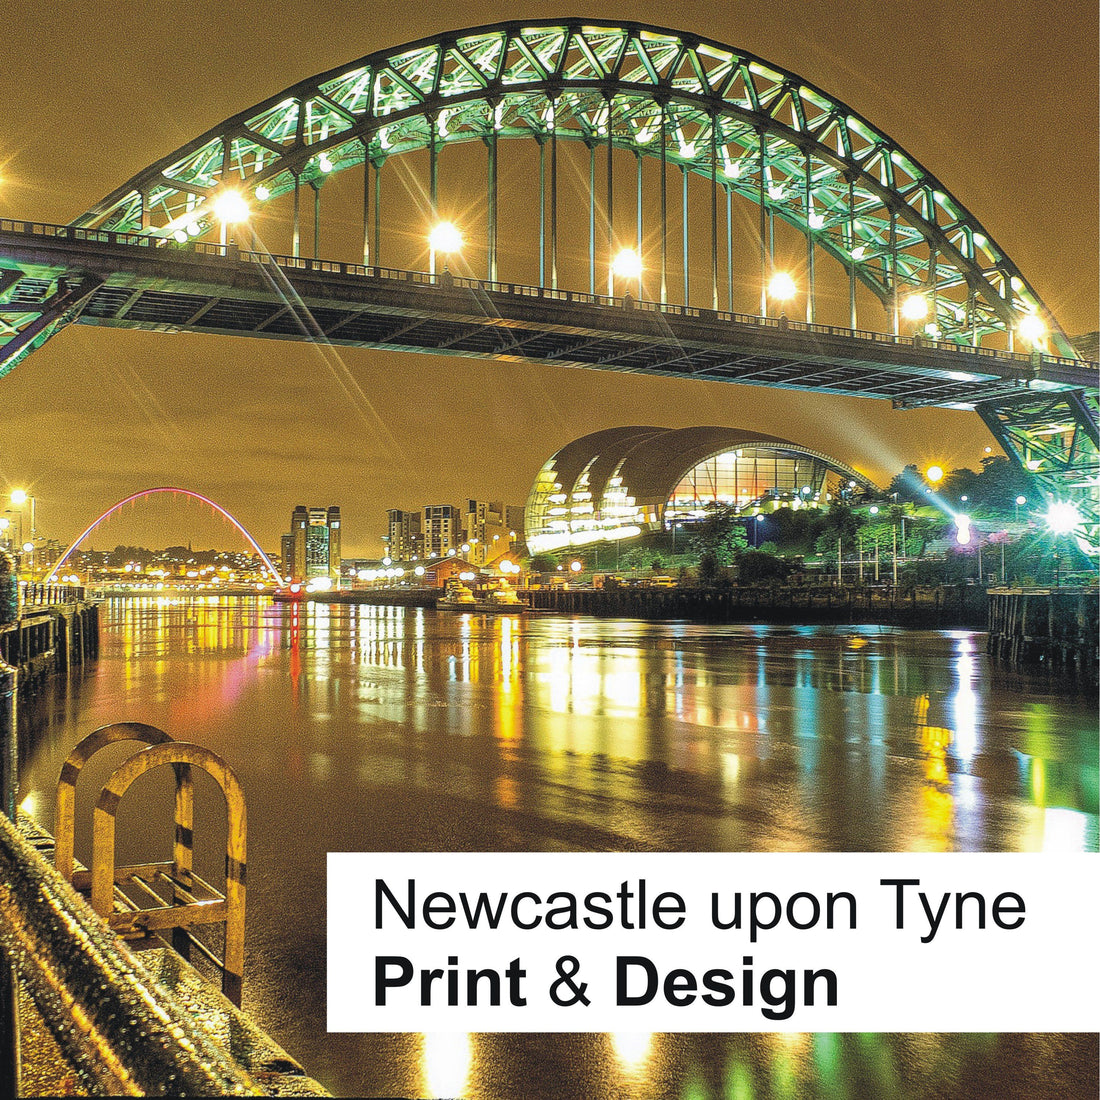 Newcastle upon Tyne - Print & Design